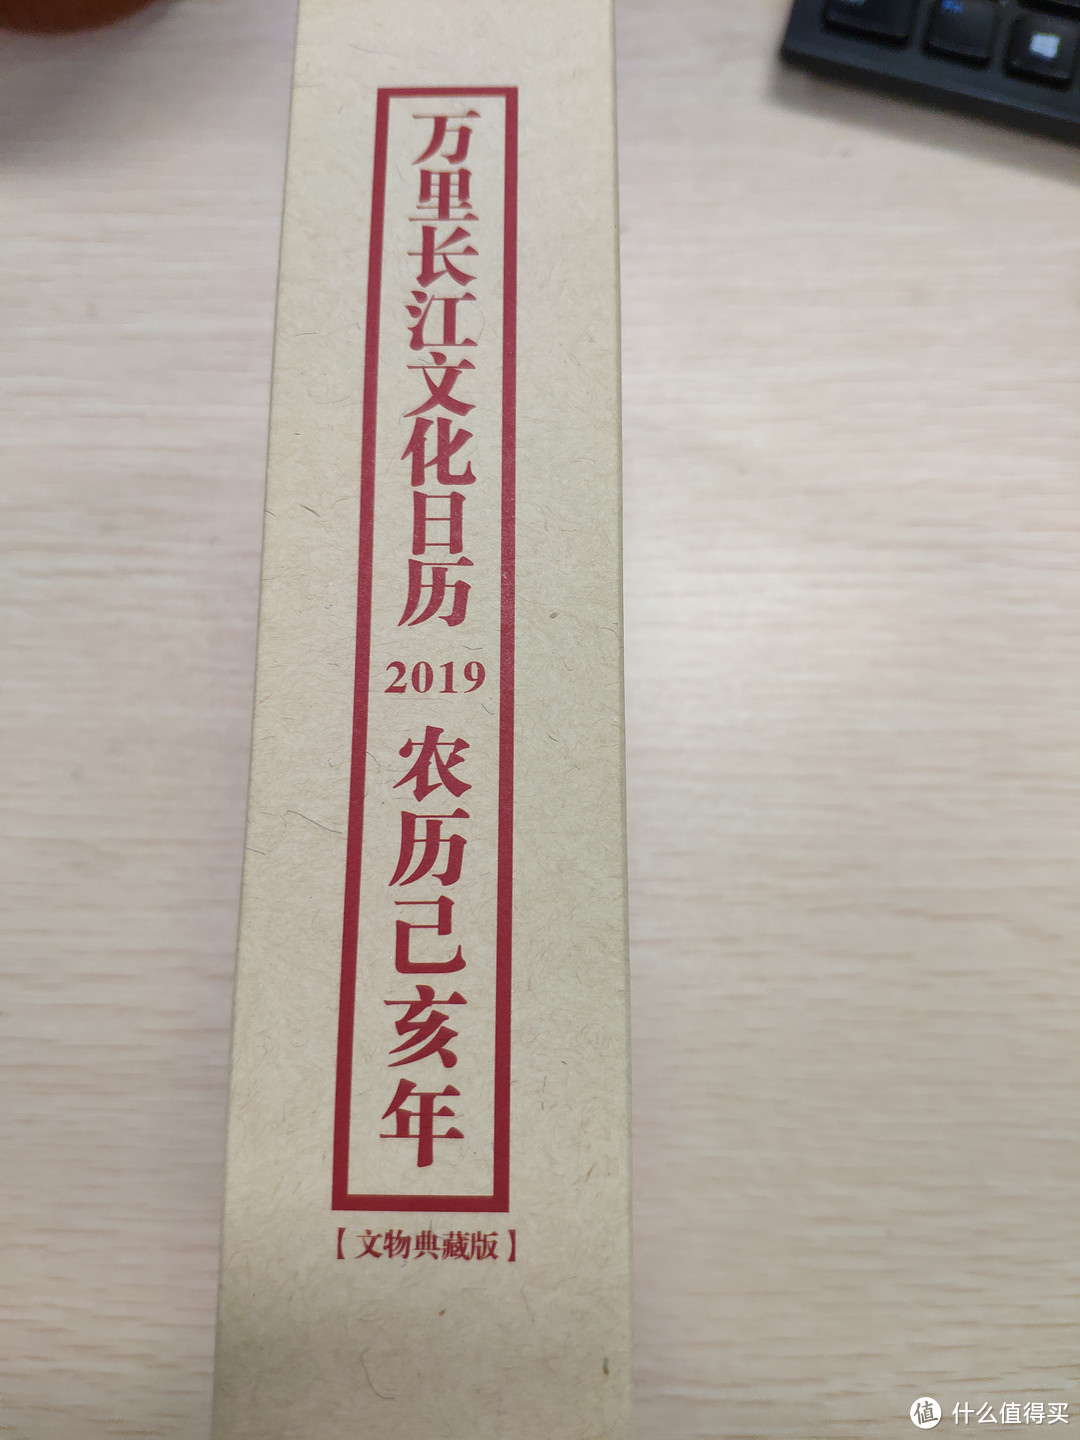 来自水利系统的礼物—2019年农历己亥年万里长江文化日历开箱